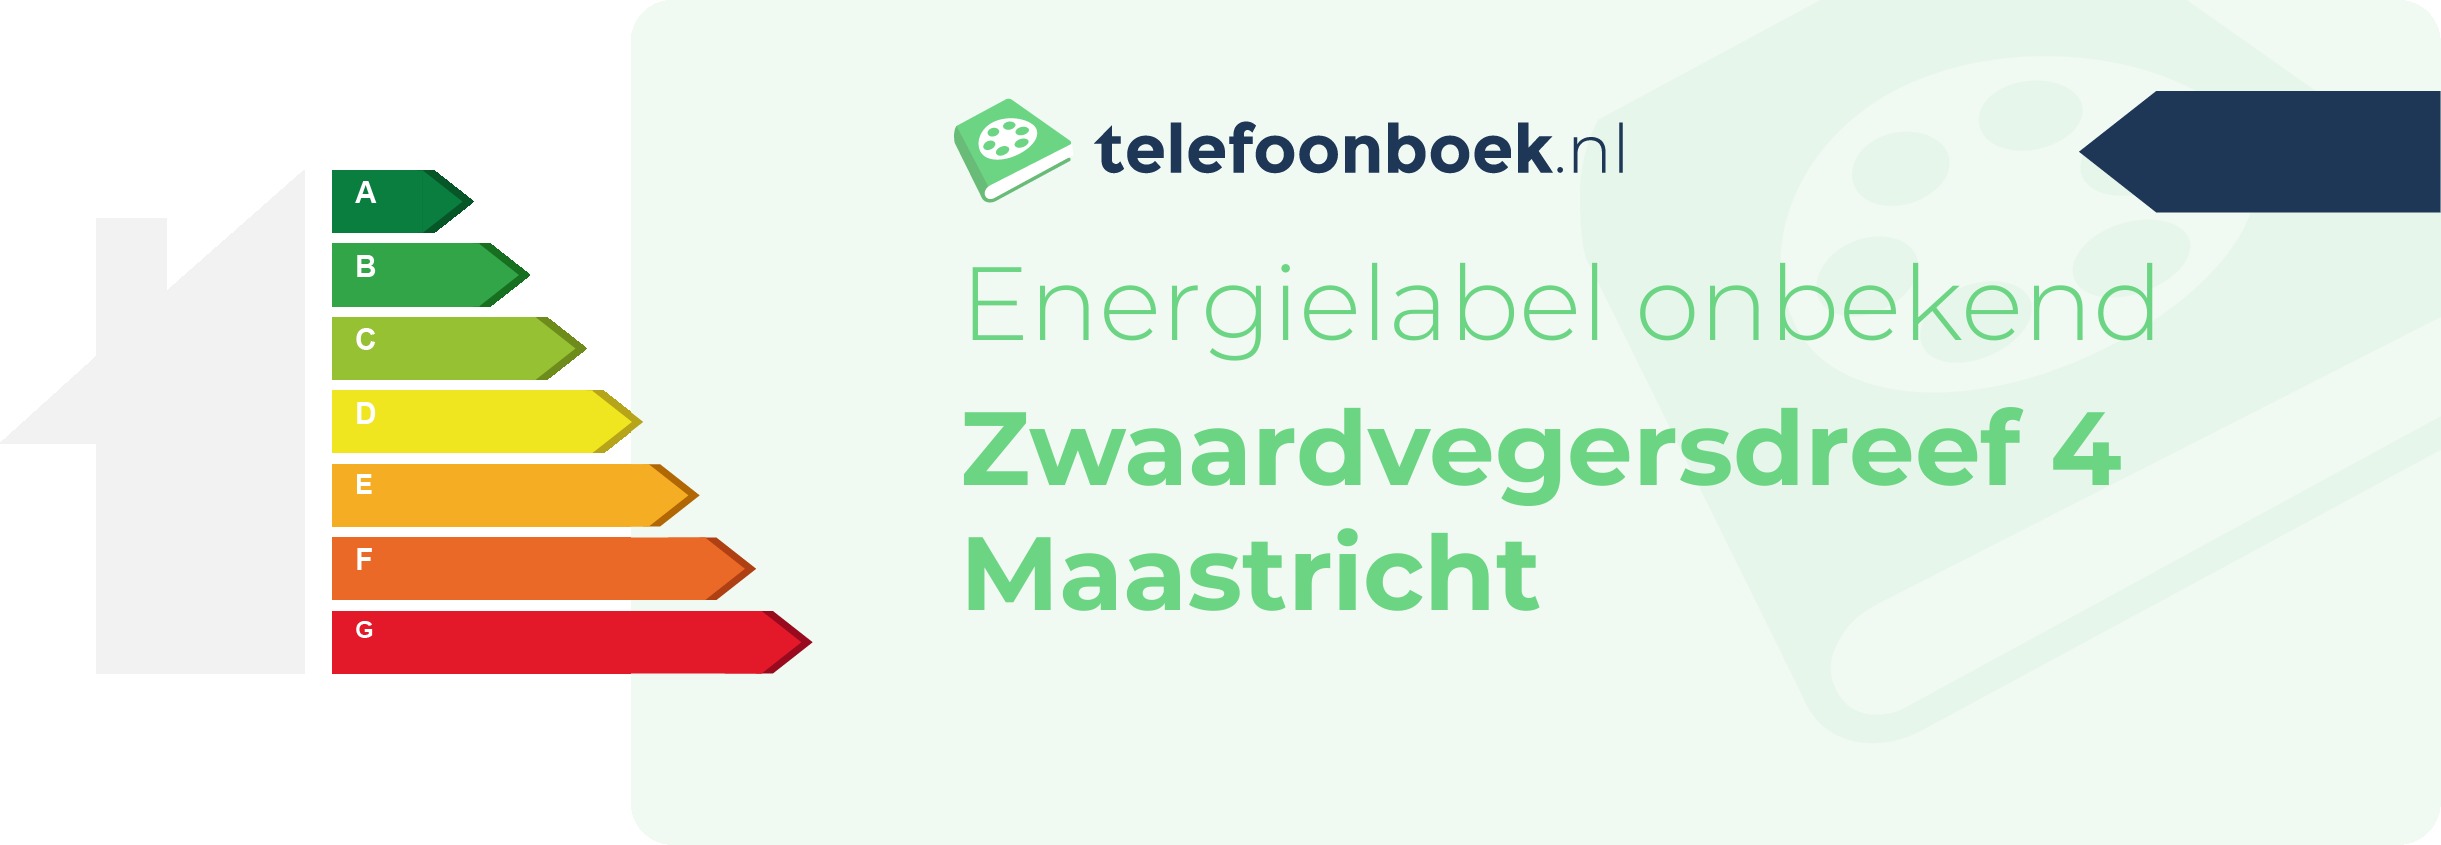 Energielabel Zwaardvegersdreef 4 Maastricht